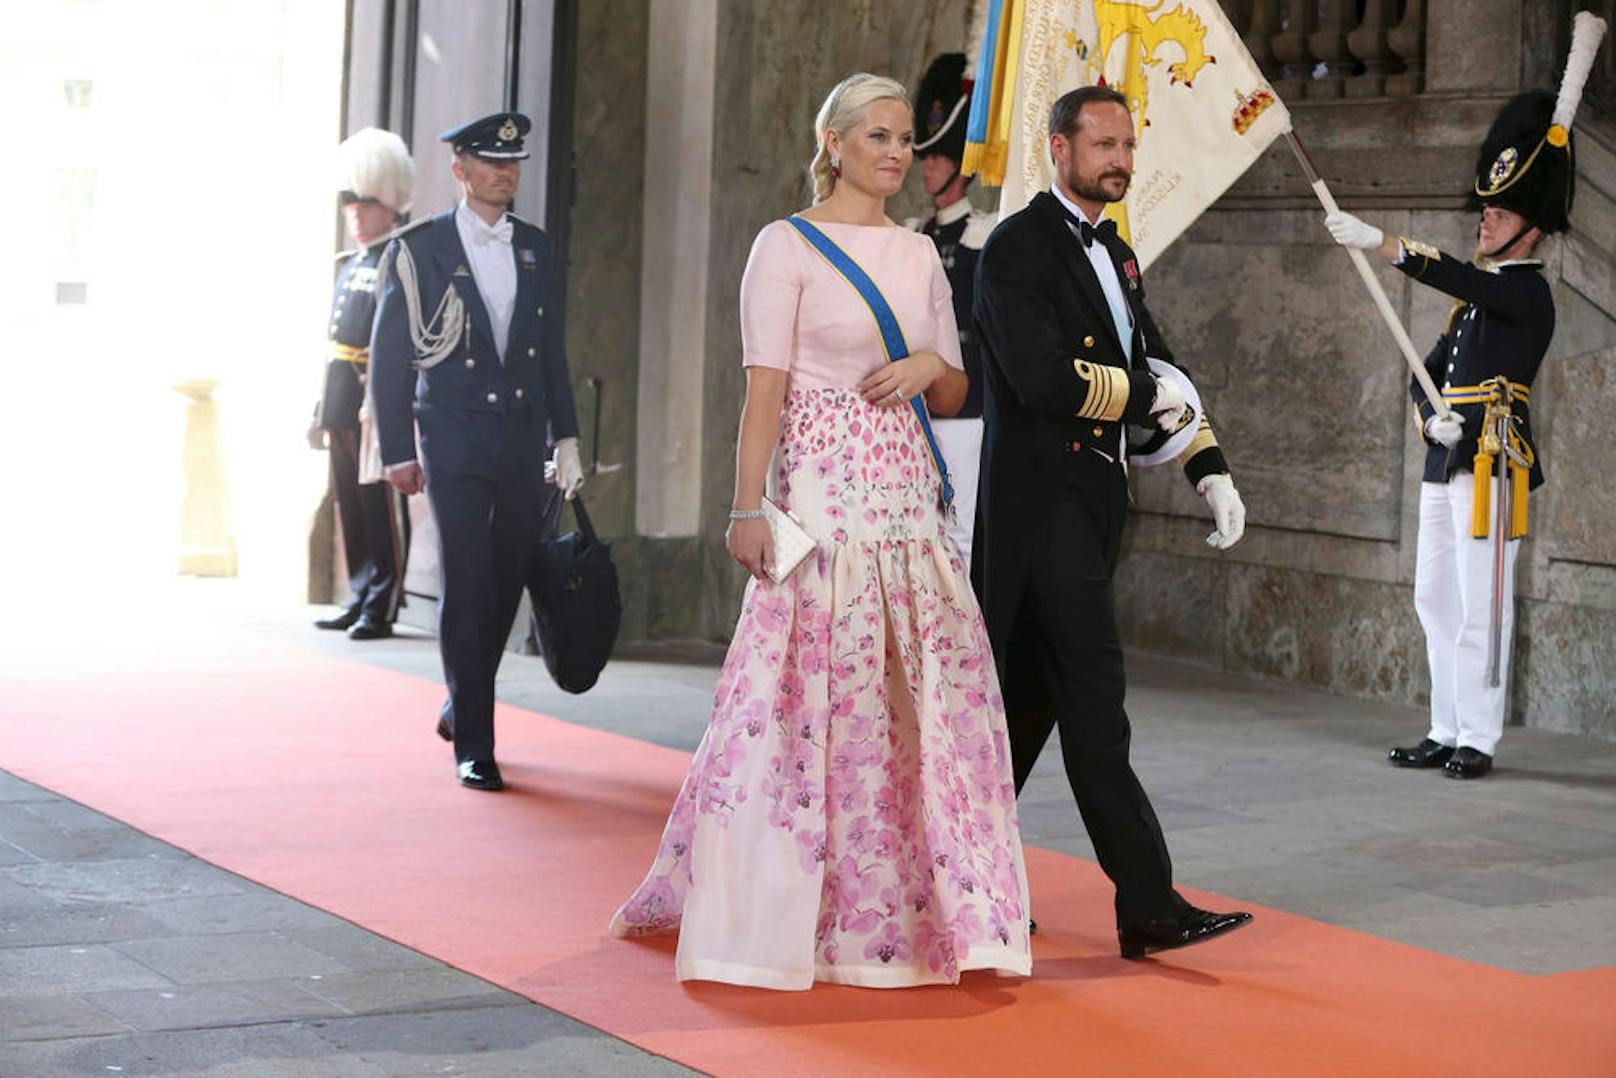 Am 25. August hatte auch das norwegische Königshaus etwas zu feiern. Kronprinz Haakon und seine Frau Mette-Marit zelebrierten ihren 15. Hochzeitstag mit der Familie. 
